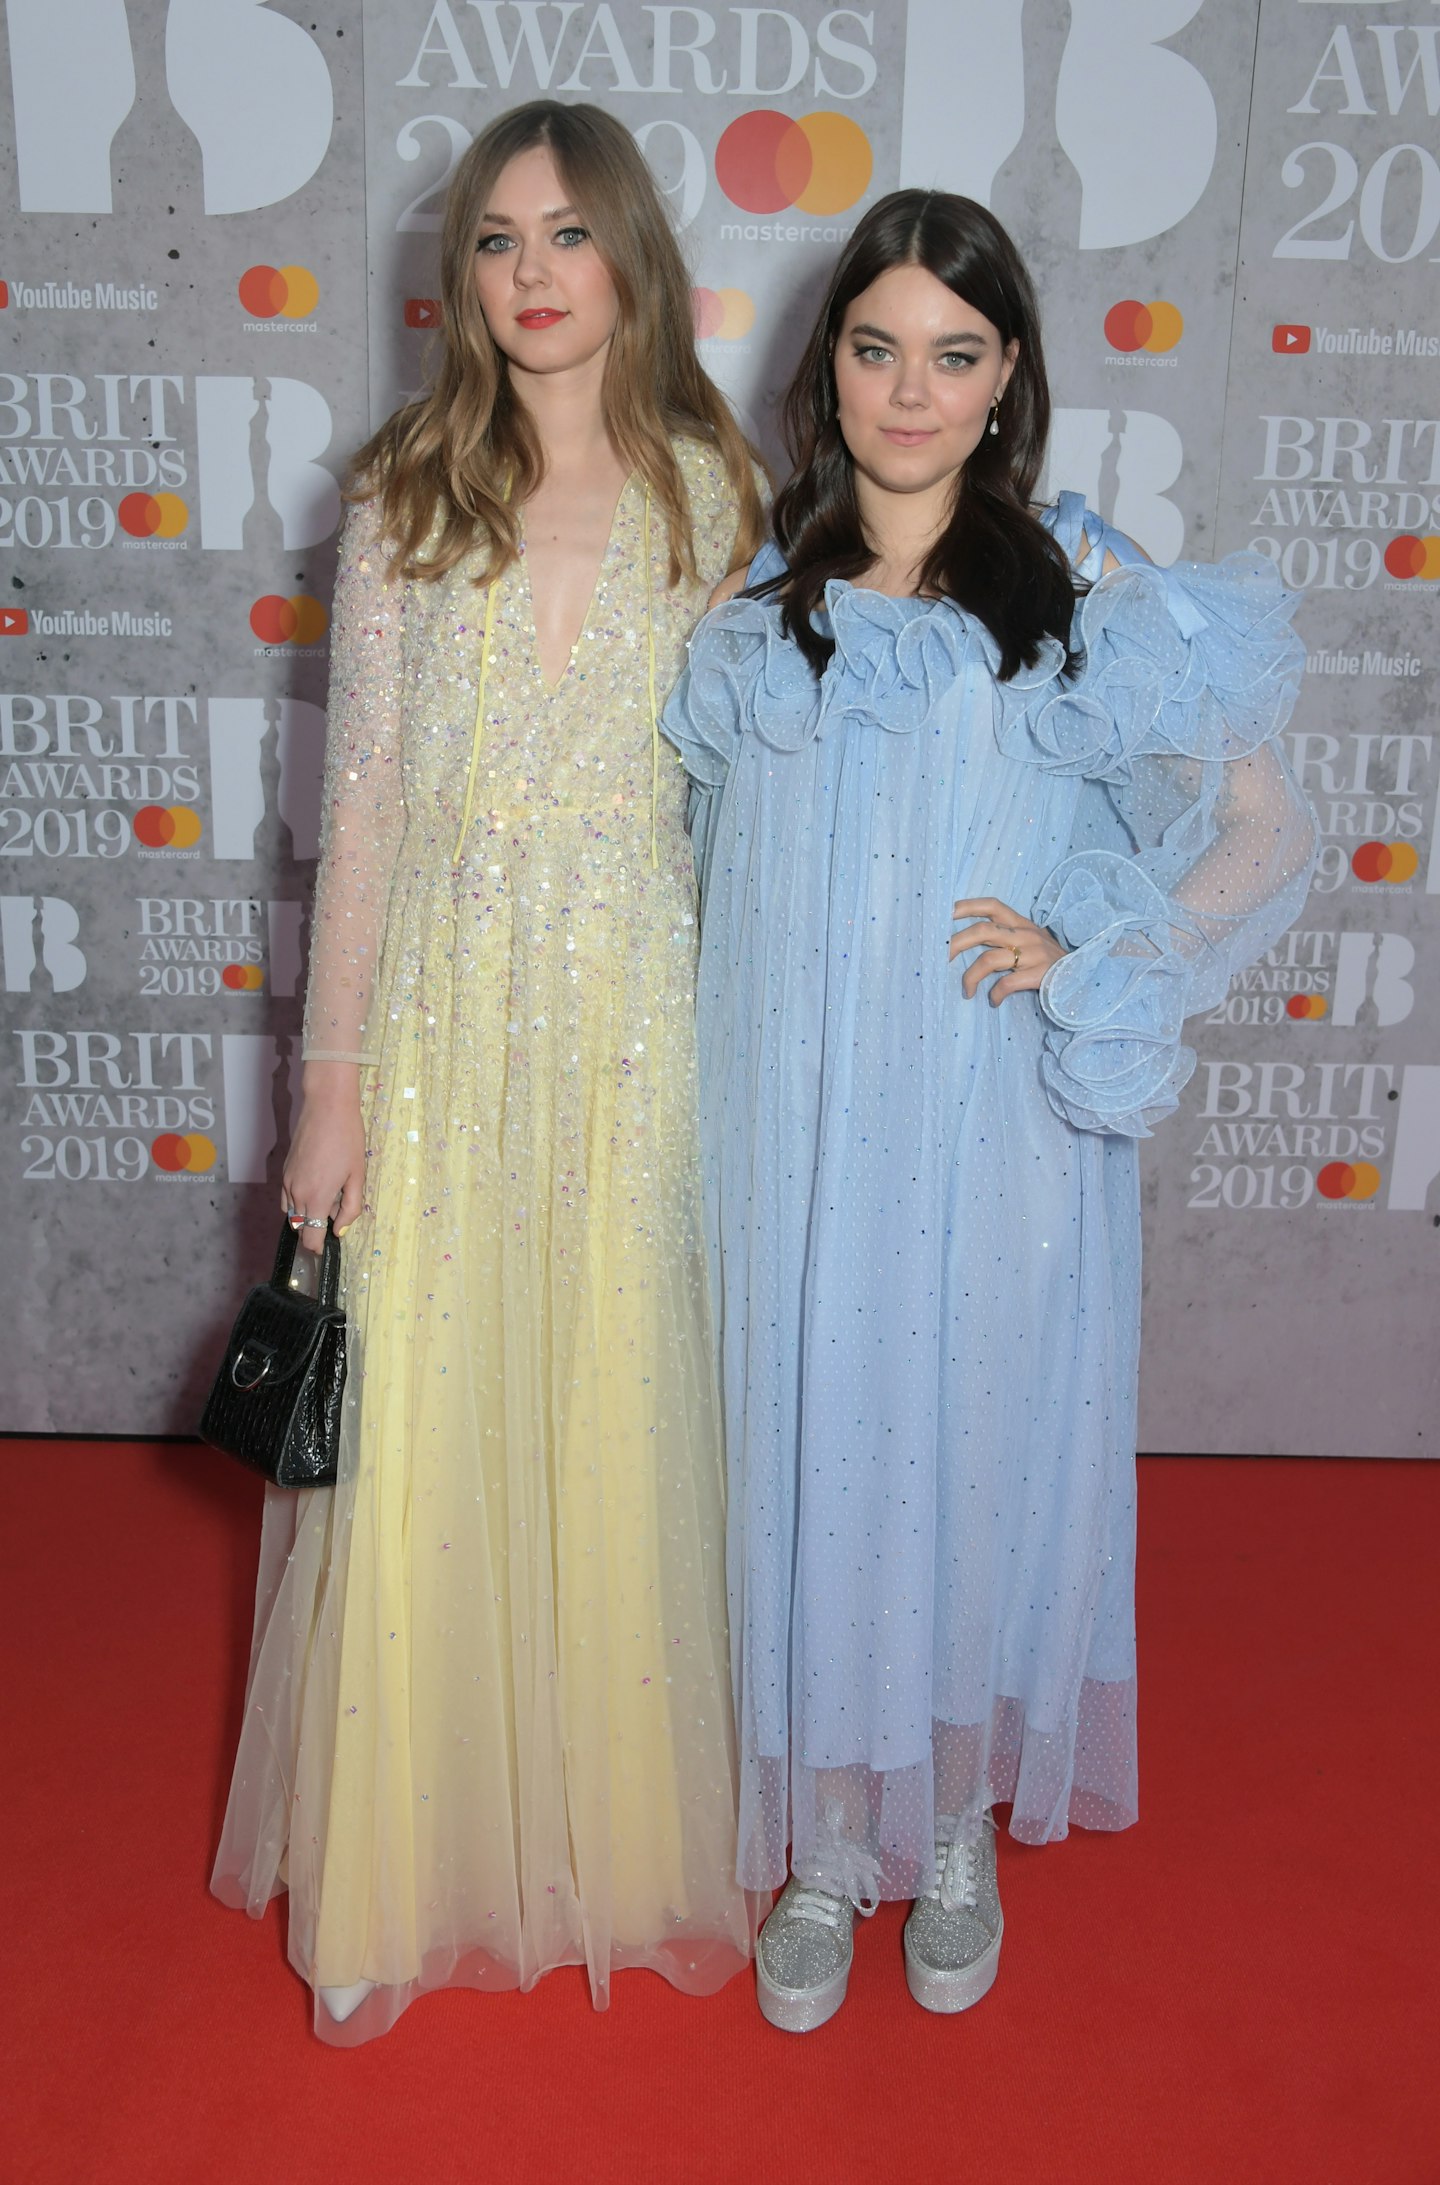 Brit Awards 2019 - Johanna Soderberg and Klara Soderberg